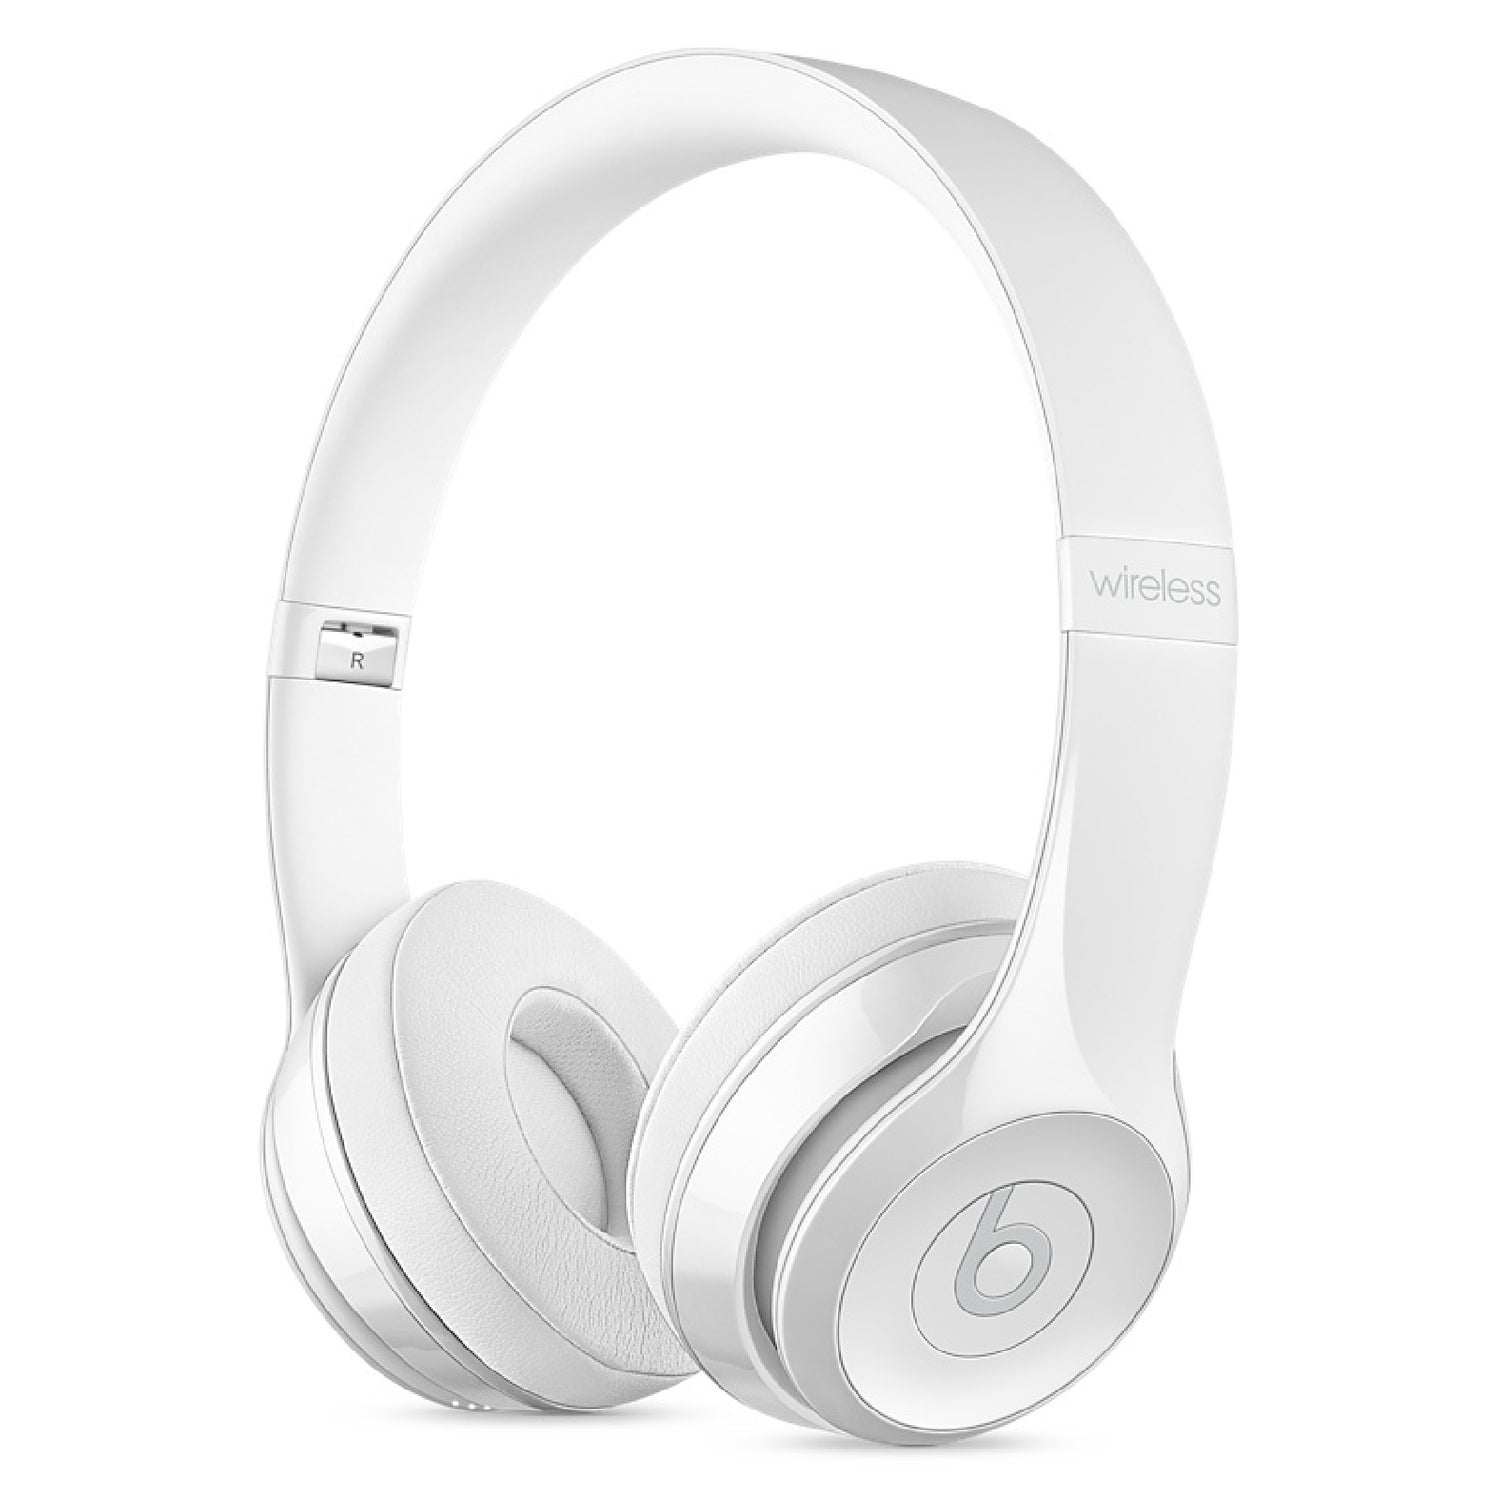 Beats by Dr. Dre Solo 3 Wireless Bluetooth On-Ear Headphones